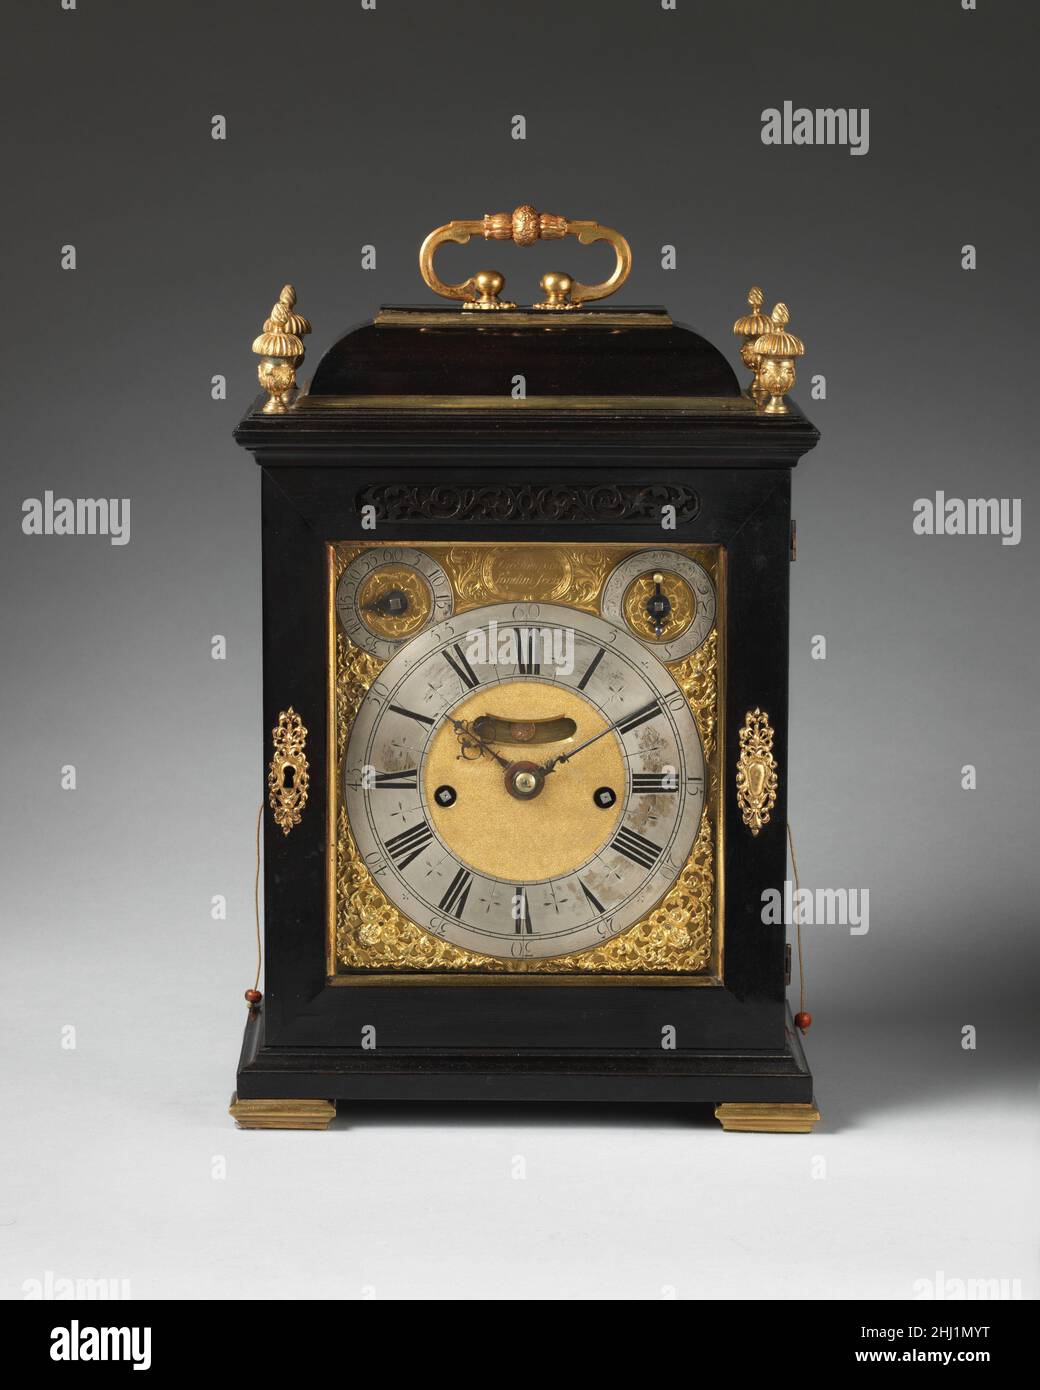 Tisch- oder Halteruhr ca. 1696 Uhrmacher: Thomas Tompion Diese tragbare Uhr hat einen sich wiederholenden Mechanismus, der es erlaubt, auf die Viertelstunde und Stunde zu schlagen, ein wertvolles Merkmal in der Dunkelheit. Abgesehen von Sonderaufträgen waren die Fälle von Tompion-Tischuhren eher nüchtern. Bei der Verwendung von Ebenholz setzte der Uhrmacher auf die angenehme Wirkung der schlichten schwarzen Oberfläche, um den Kontrast zu Gold und Silber des Zifferblatts und der verwendeten Hardware zu bilden (die vaseförmigen Finials wurden von einem späteren Besitzer hinzugefügt). Tischuhr oder Halteruhr. Großbritannien, London. Ca. 1696. Gehäuse: Ebenholz furniert auf Eiche mit vergoldeten und si Stockfoto